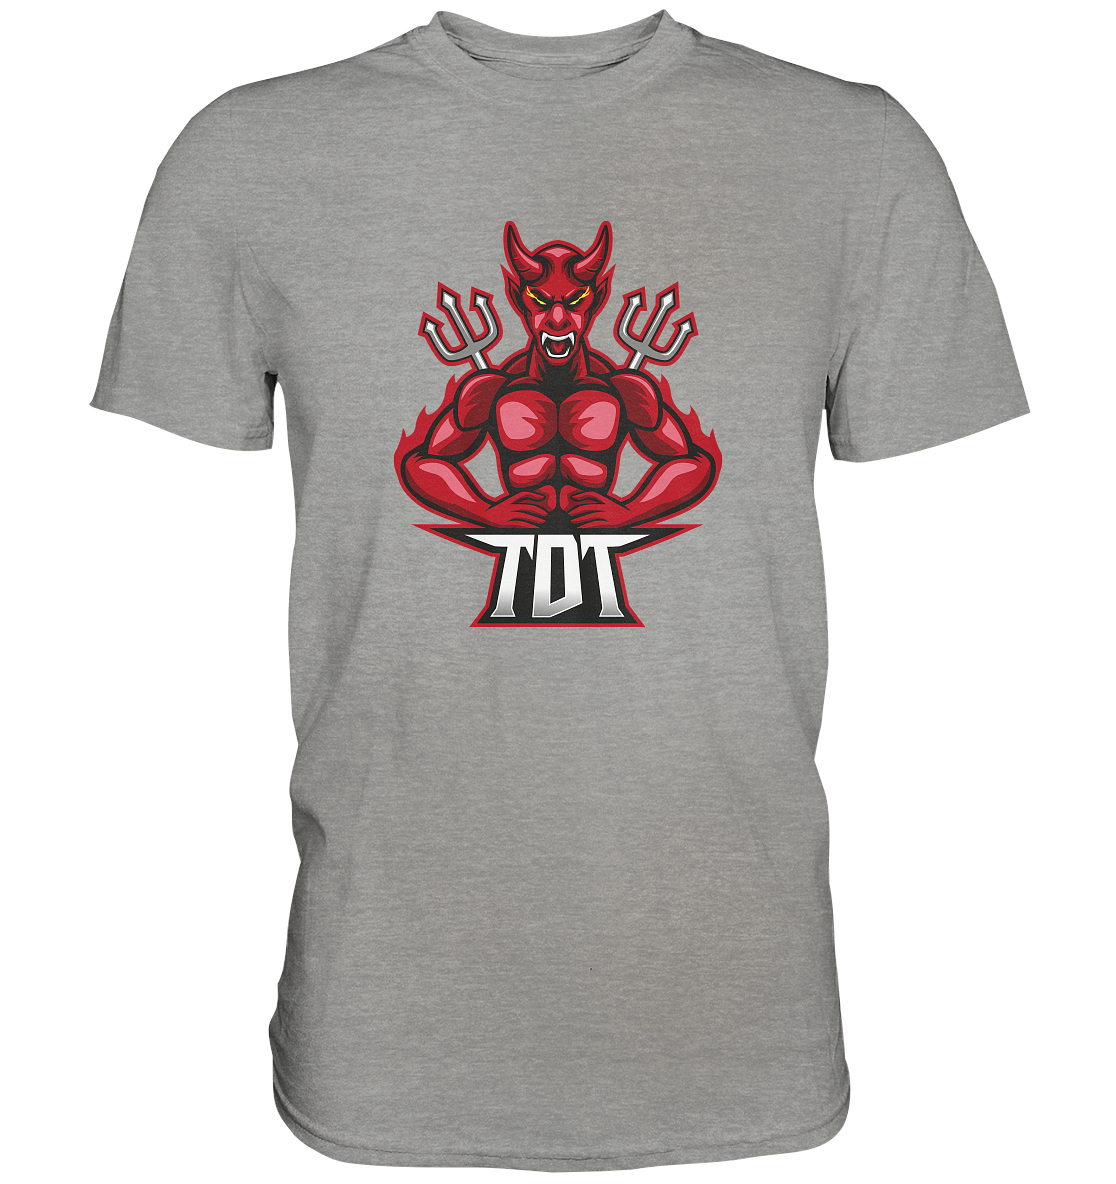 THE DEVILS TRIBE - Basic Shirt